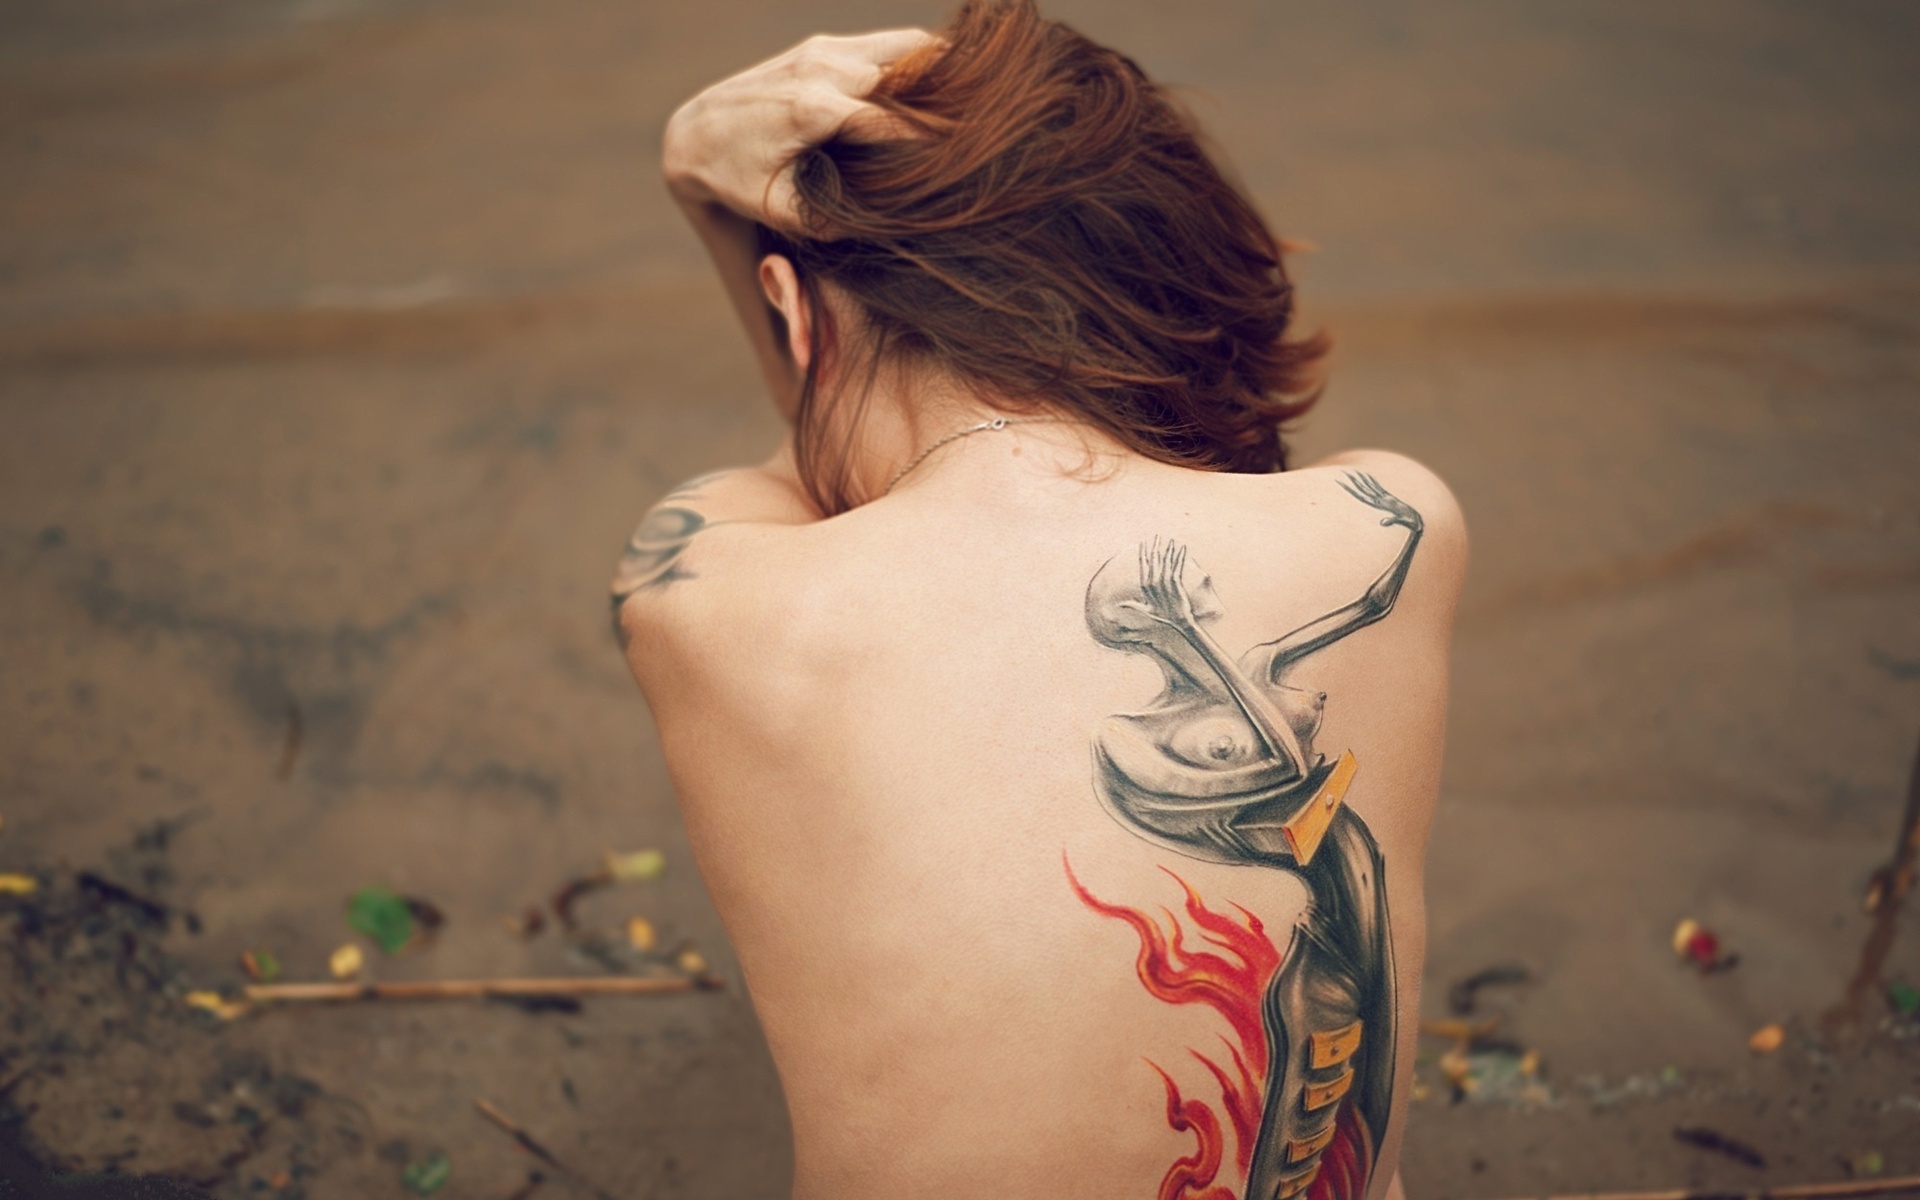 Stunning Upper Back Tattoos for Women